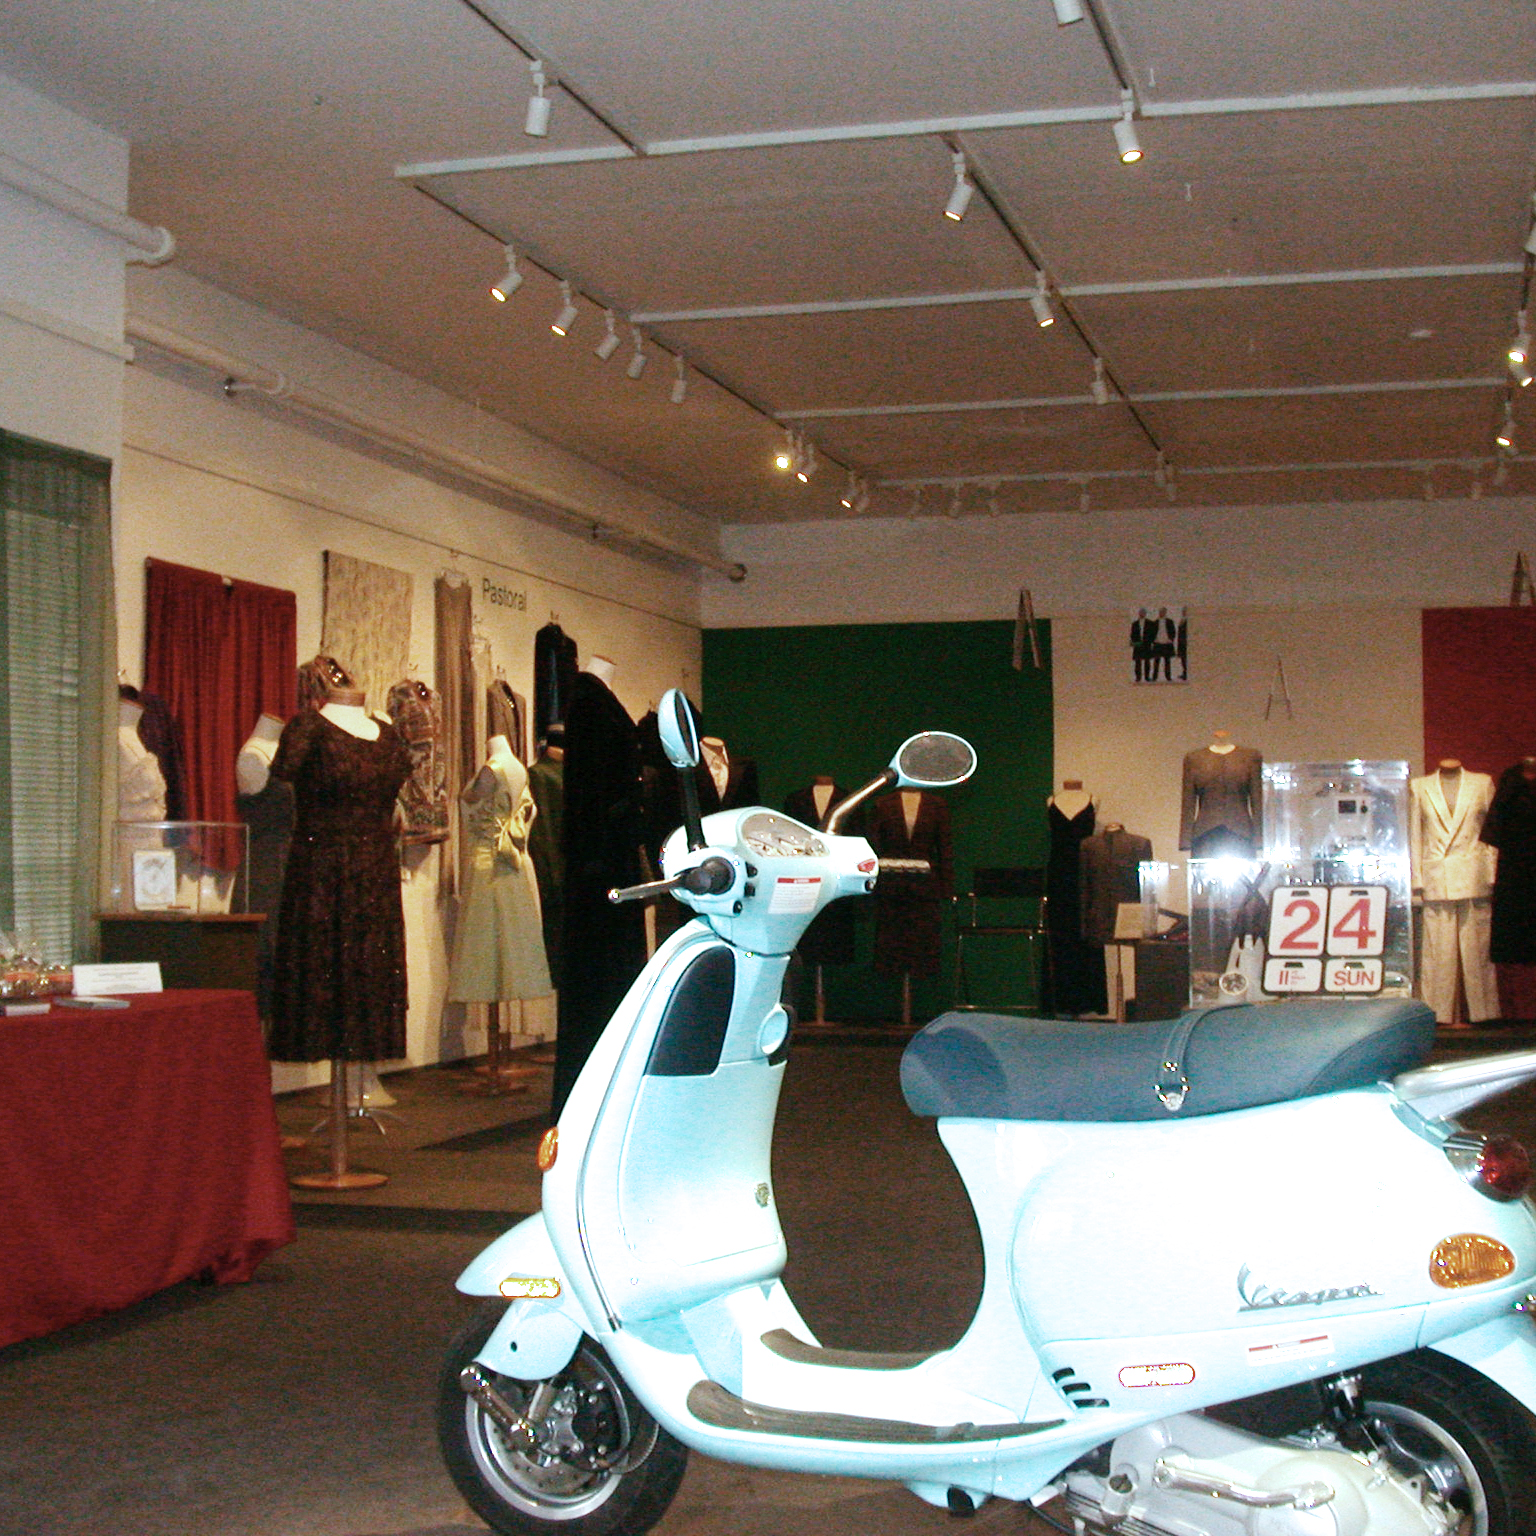 Moda Italiana objects on display